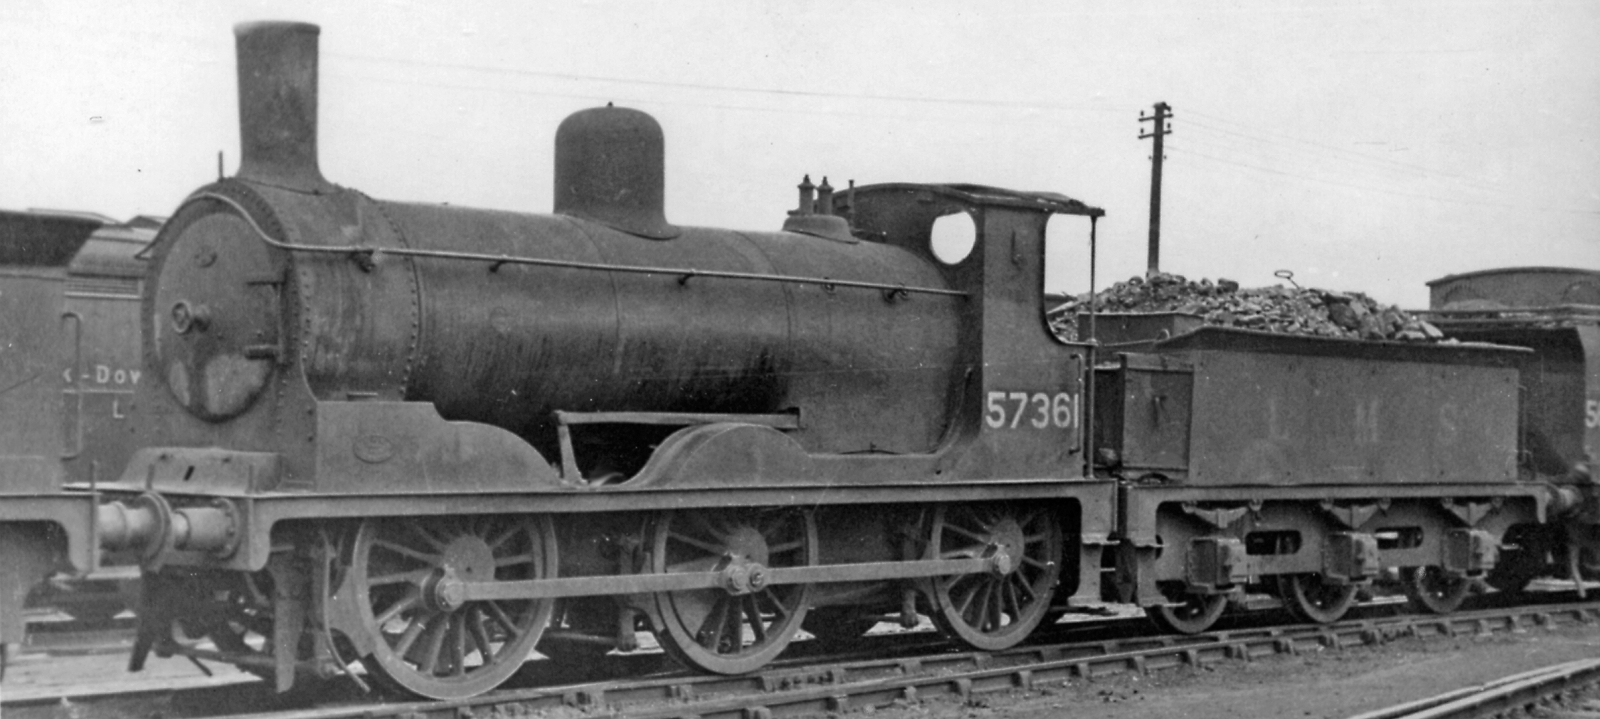 British Railways Class 294 No. 57361 in August 1948 at Polmadie Depot